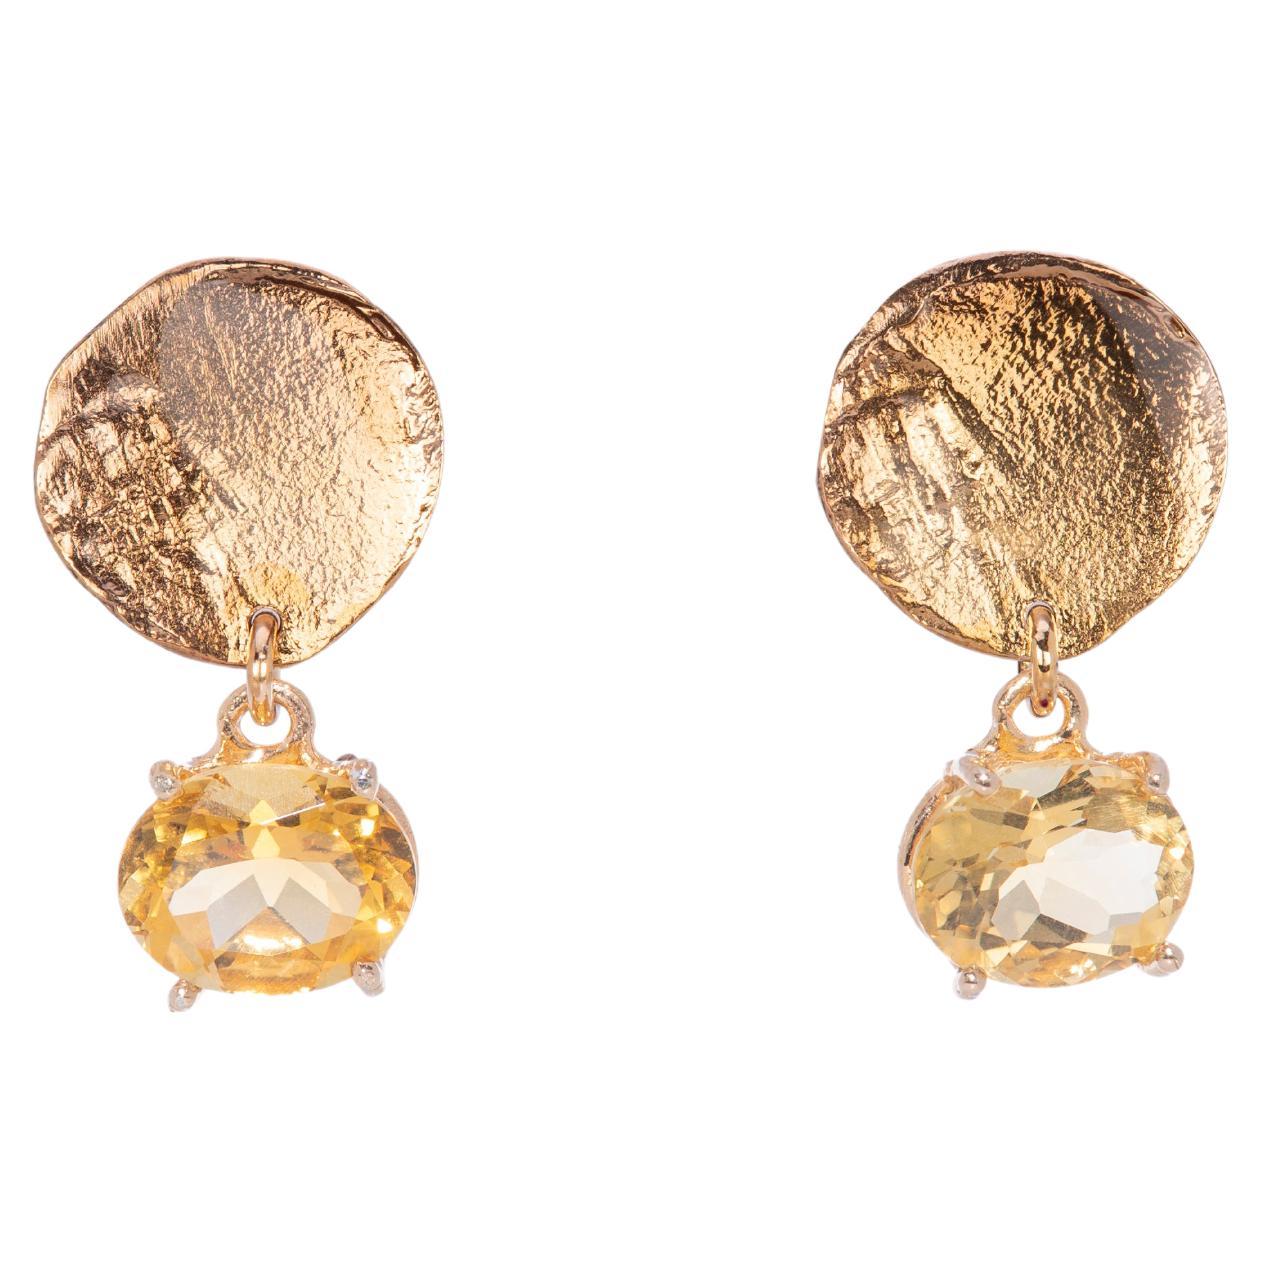 Pendants d'oreilles en or jaune 18 carats, citrine et or avec motif de lune, fabrication artisanale